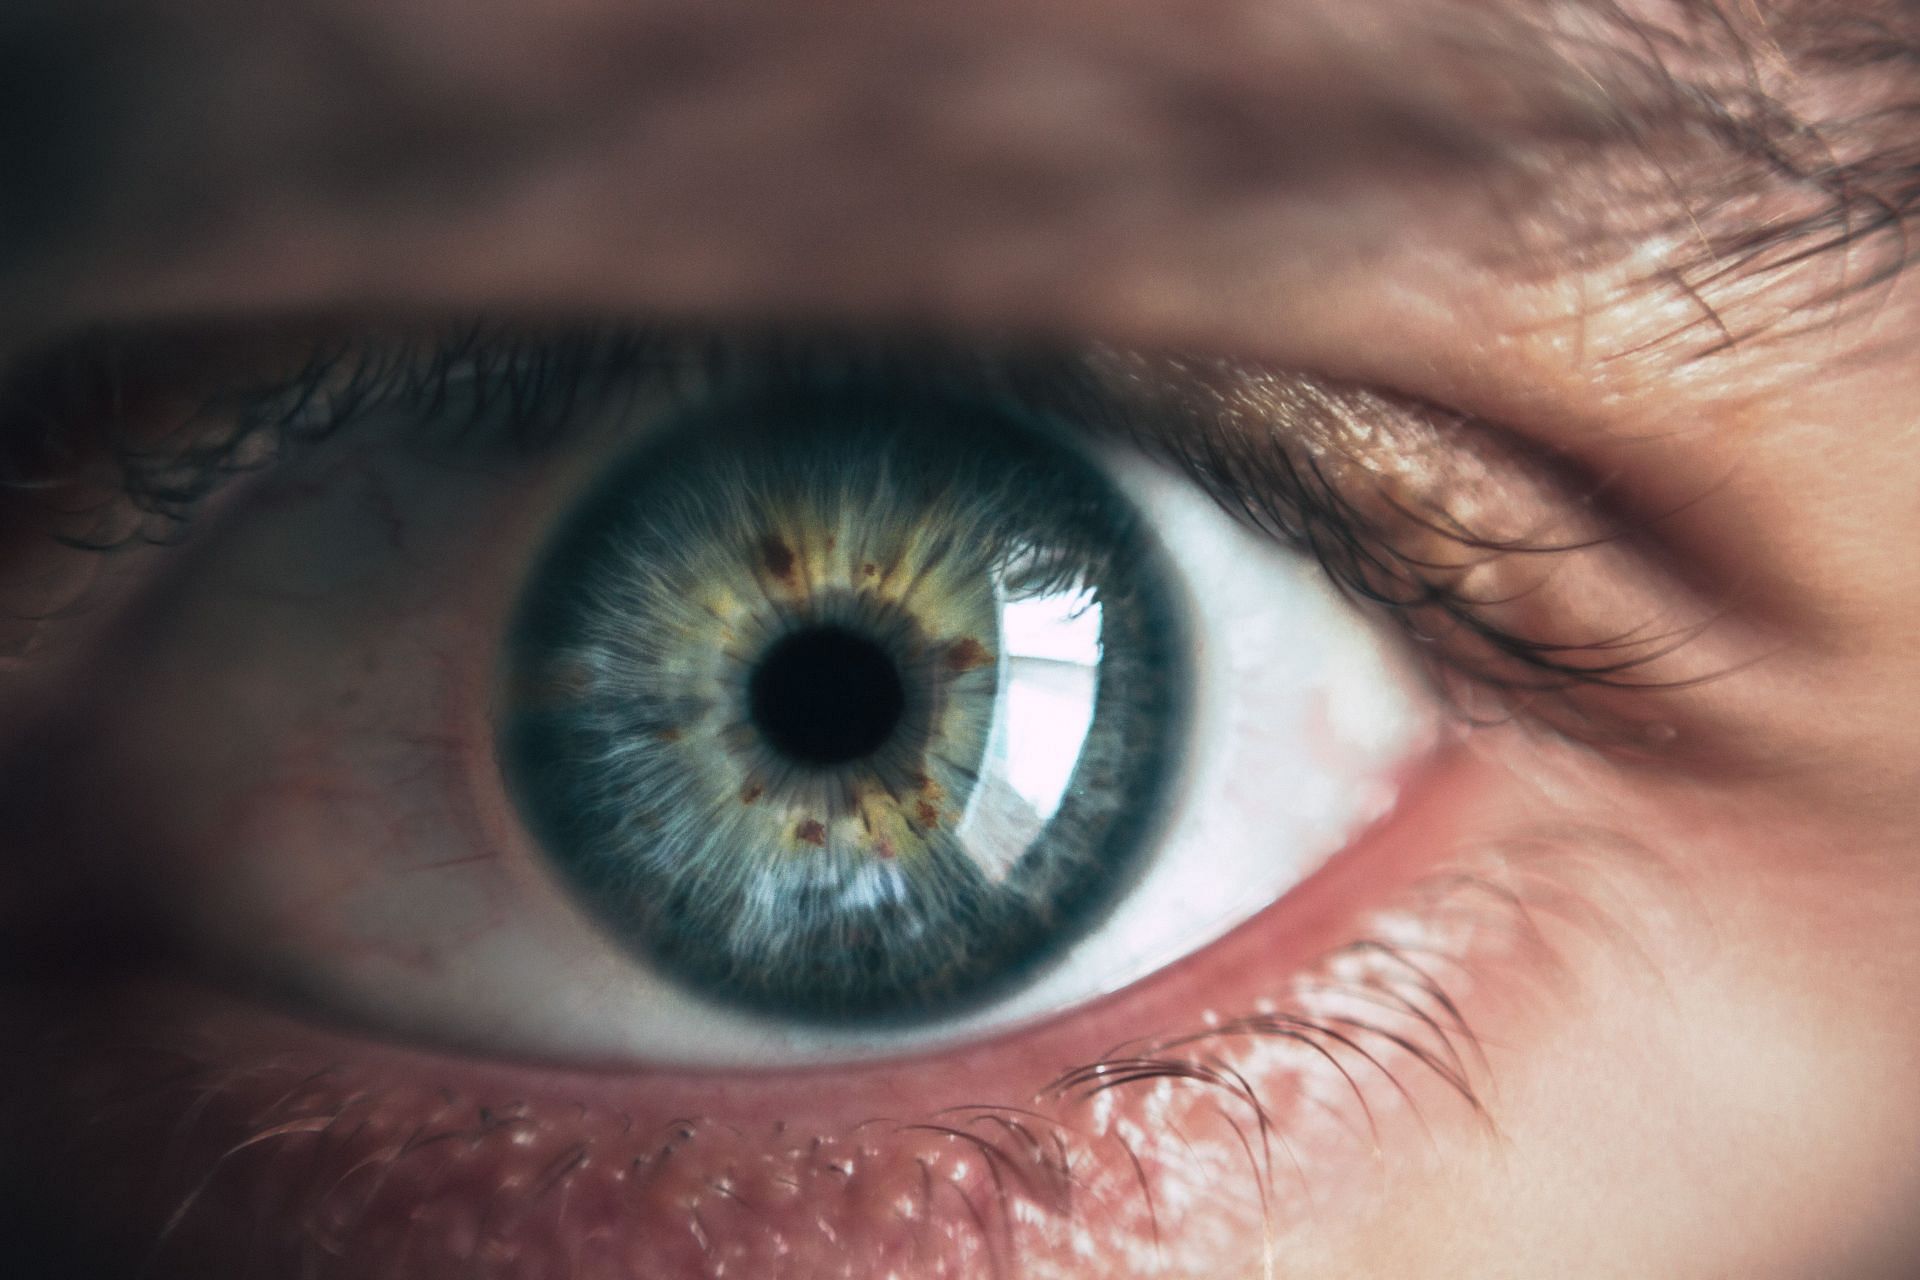 Dilated eyes (Image via Unsplash/Victor Frietas)